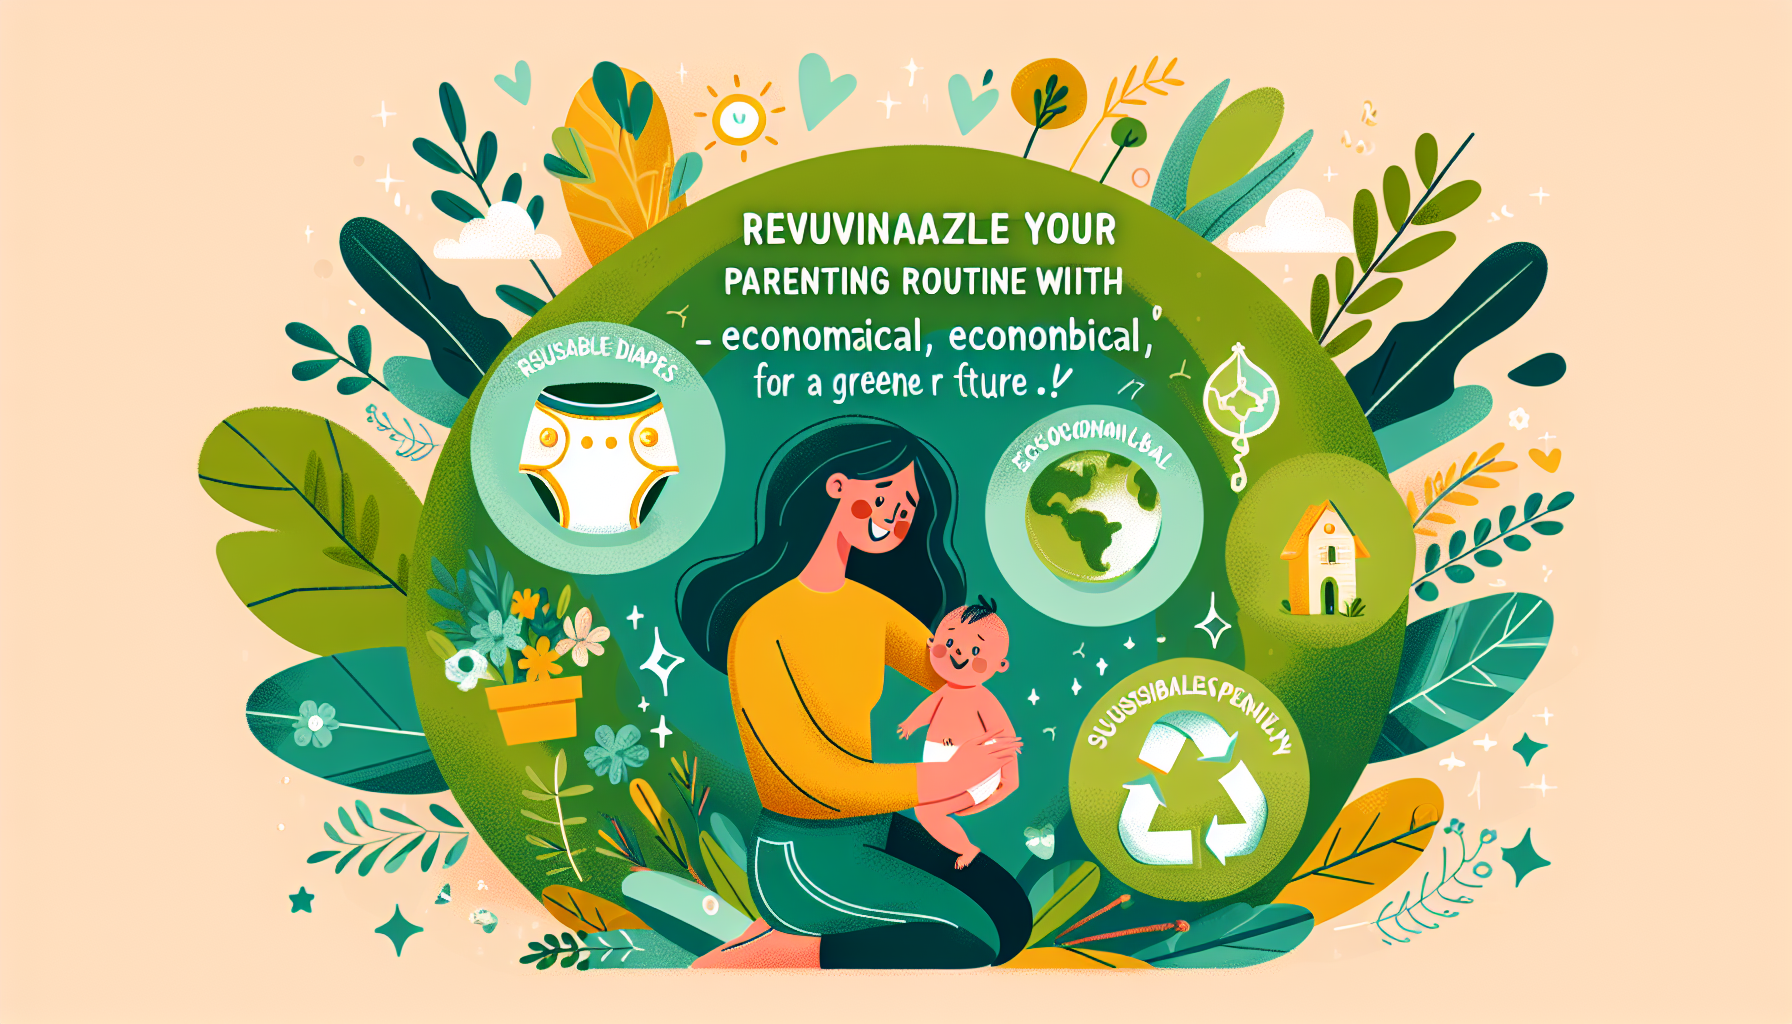 découvrez les avantages économiques et écologiques des couches lavables pour les parents soucieux de l'environnement. optez pour une solution durable et économique pour préserver la planète !